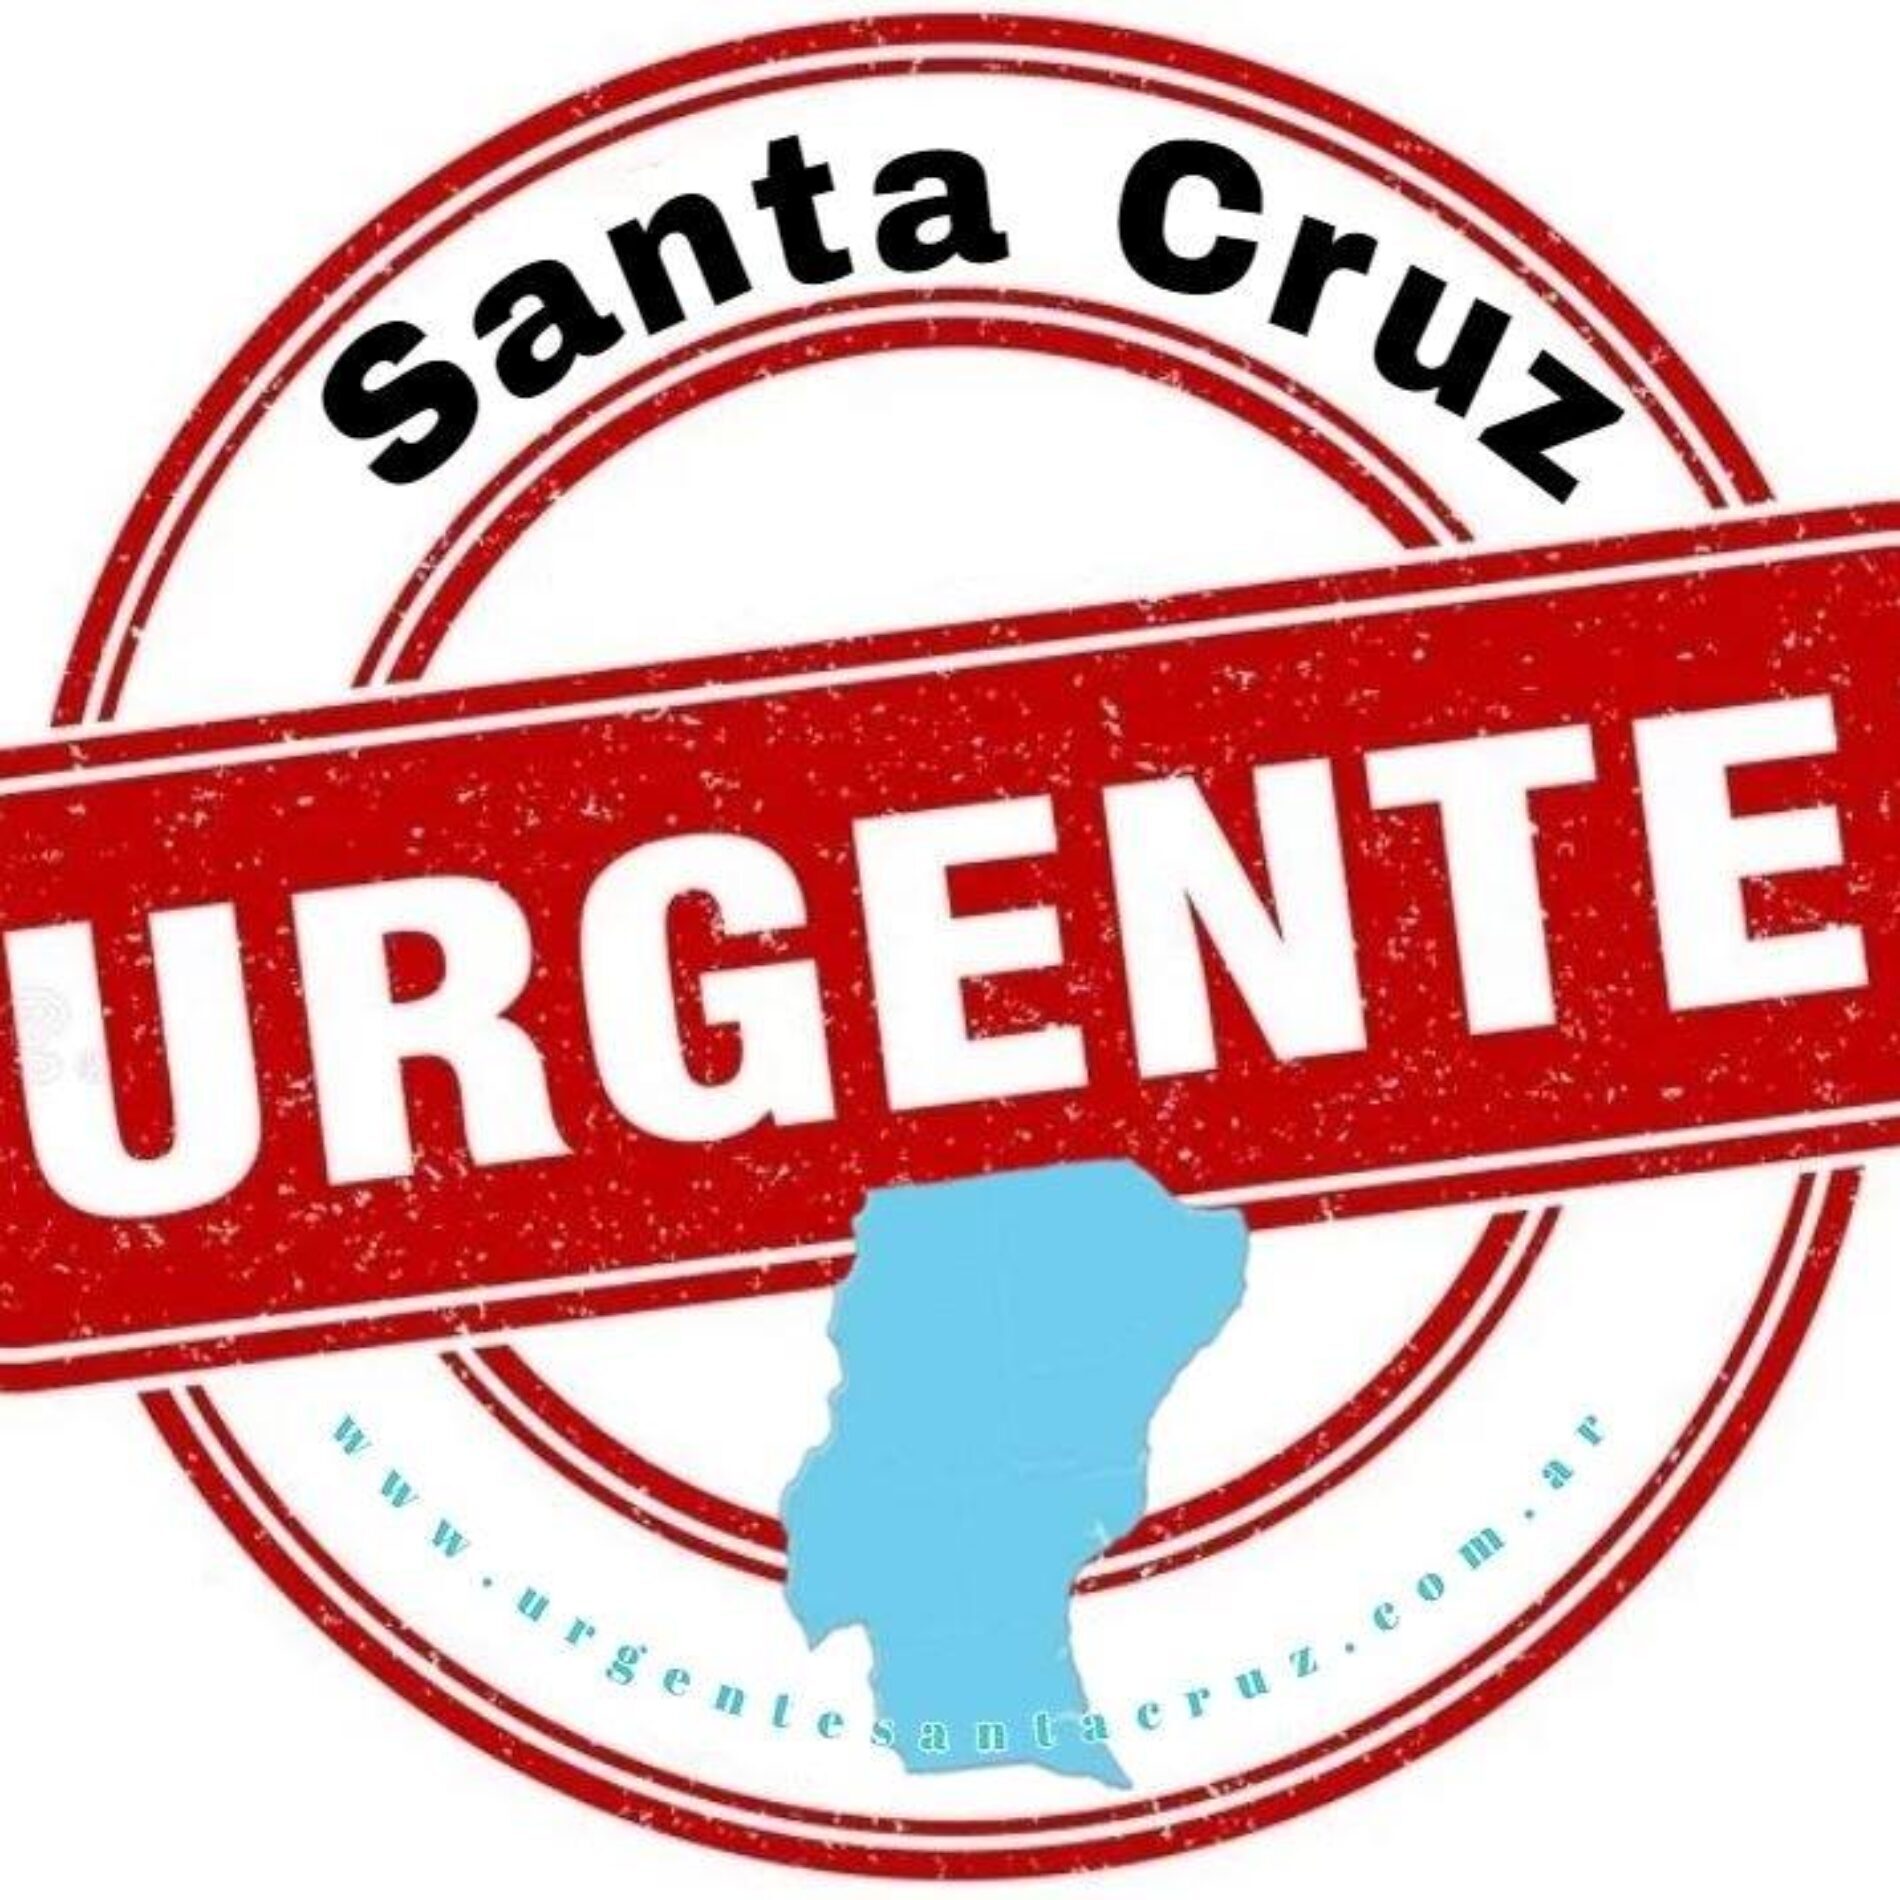 Santa Cruz Urgente